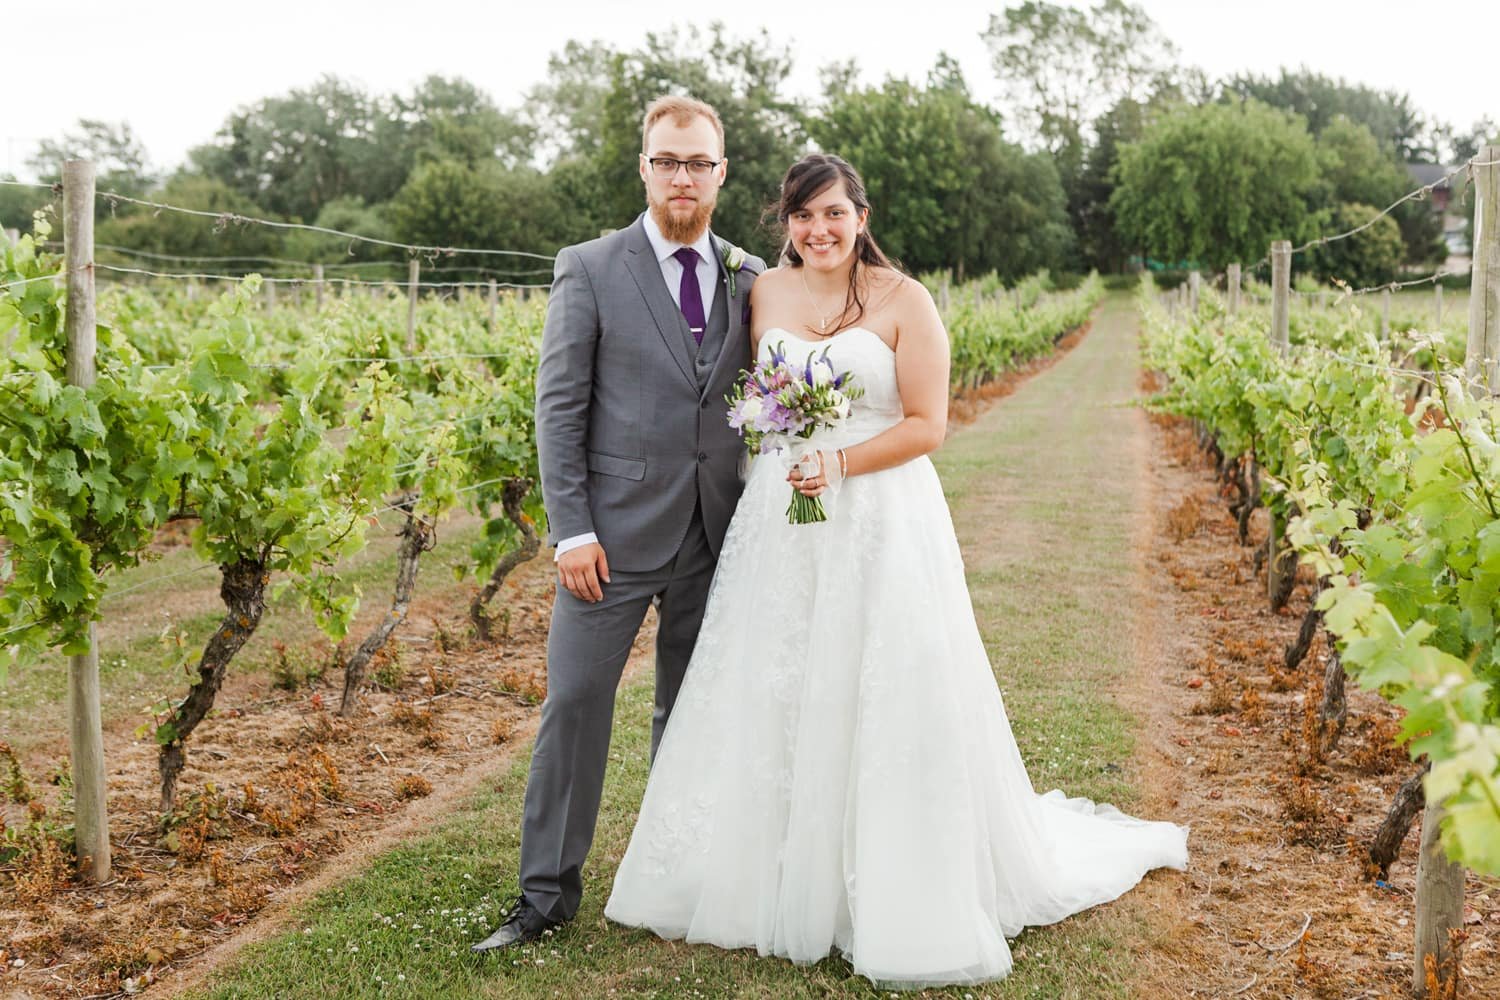 Mersea Island Vineyard Wedding Photography